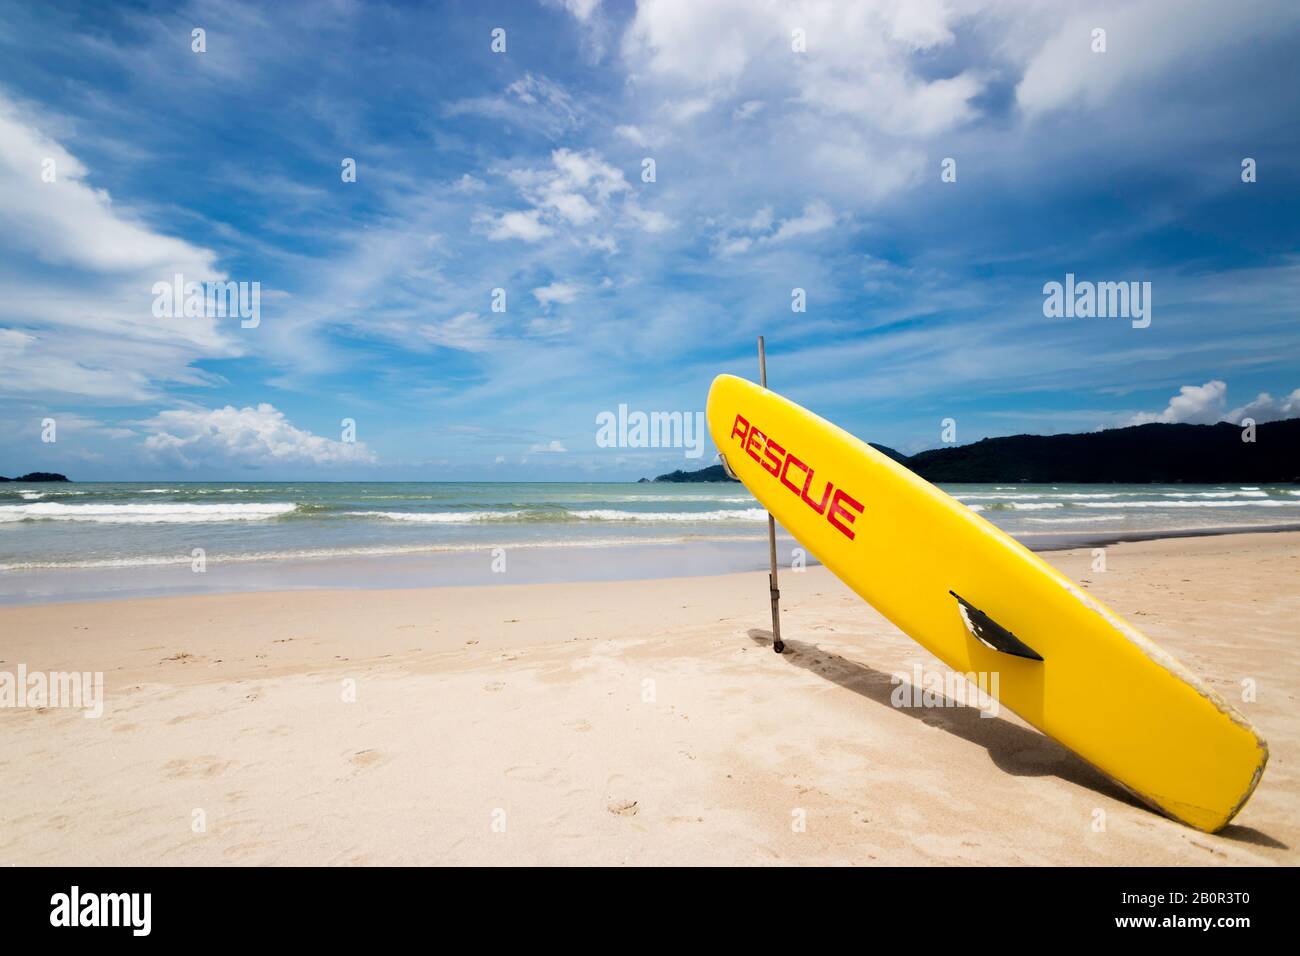 surf salvataggio bagnino surf surfboard sulla spiaggia al punto di salvataggio guardia con grande onda oceano sullo sfondo. aiutare, sicurezza e soccorso concetto Foto Stock